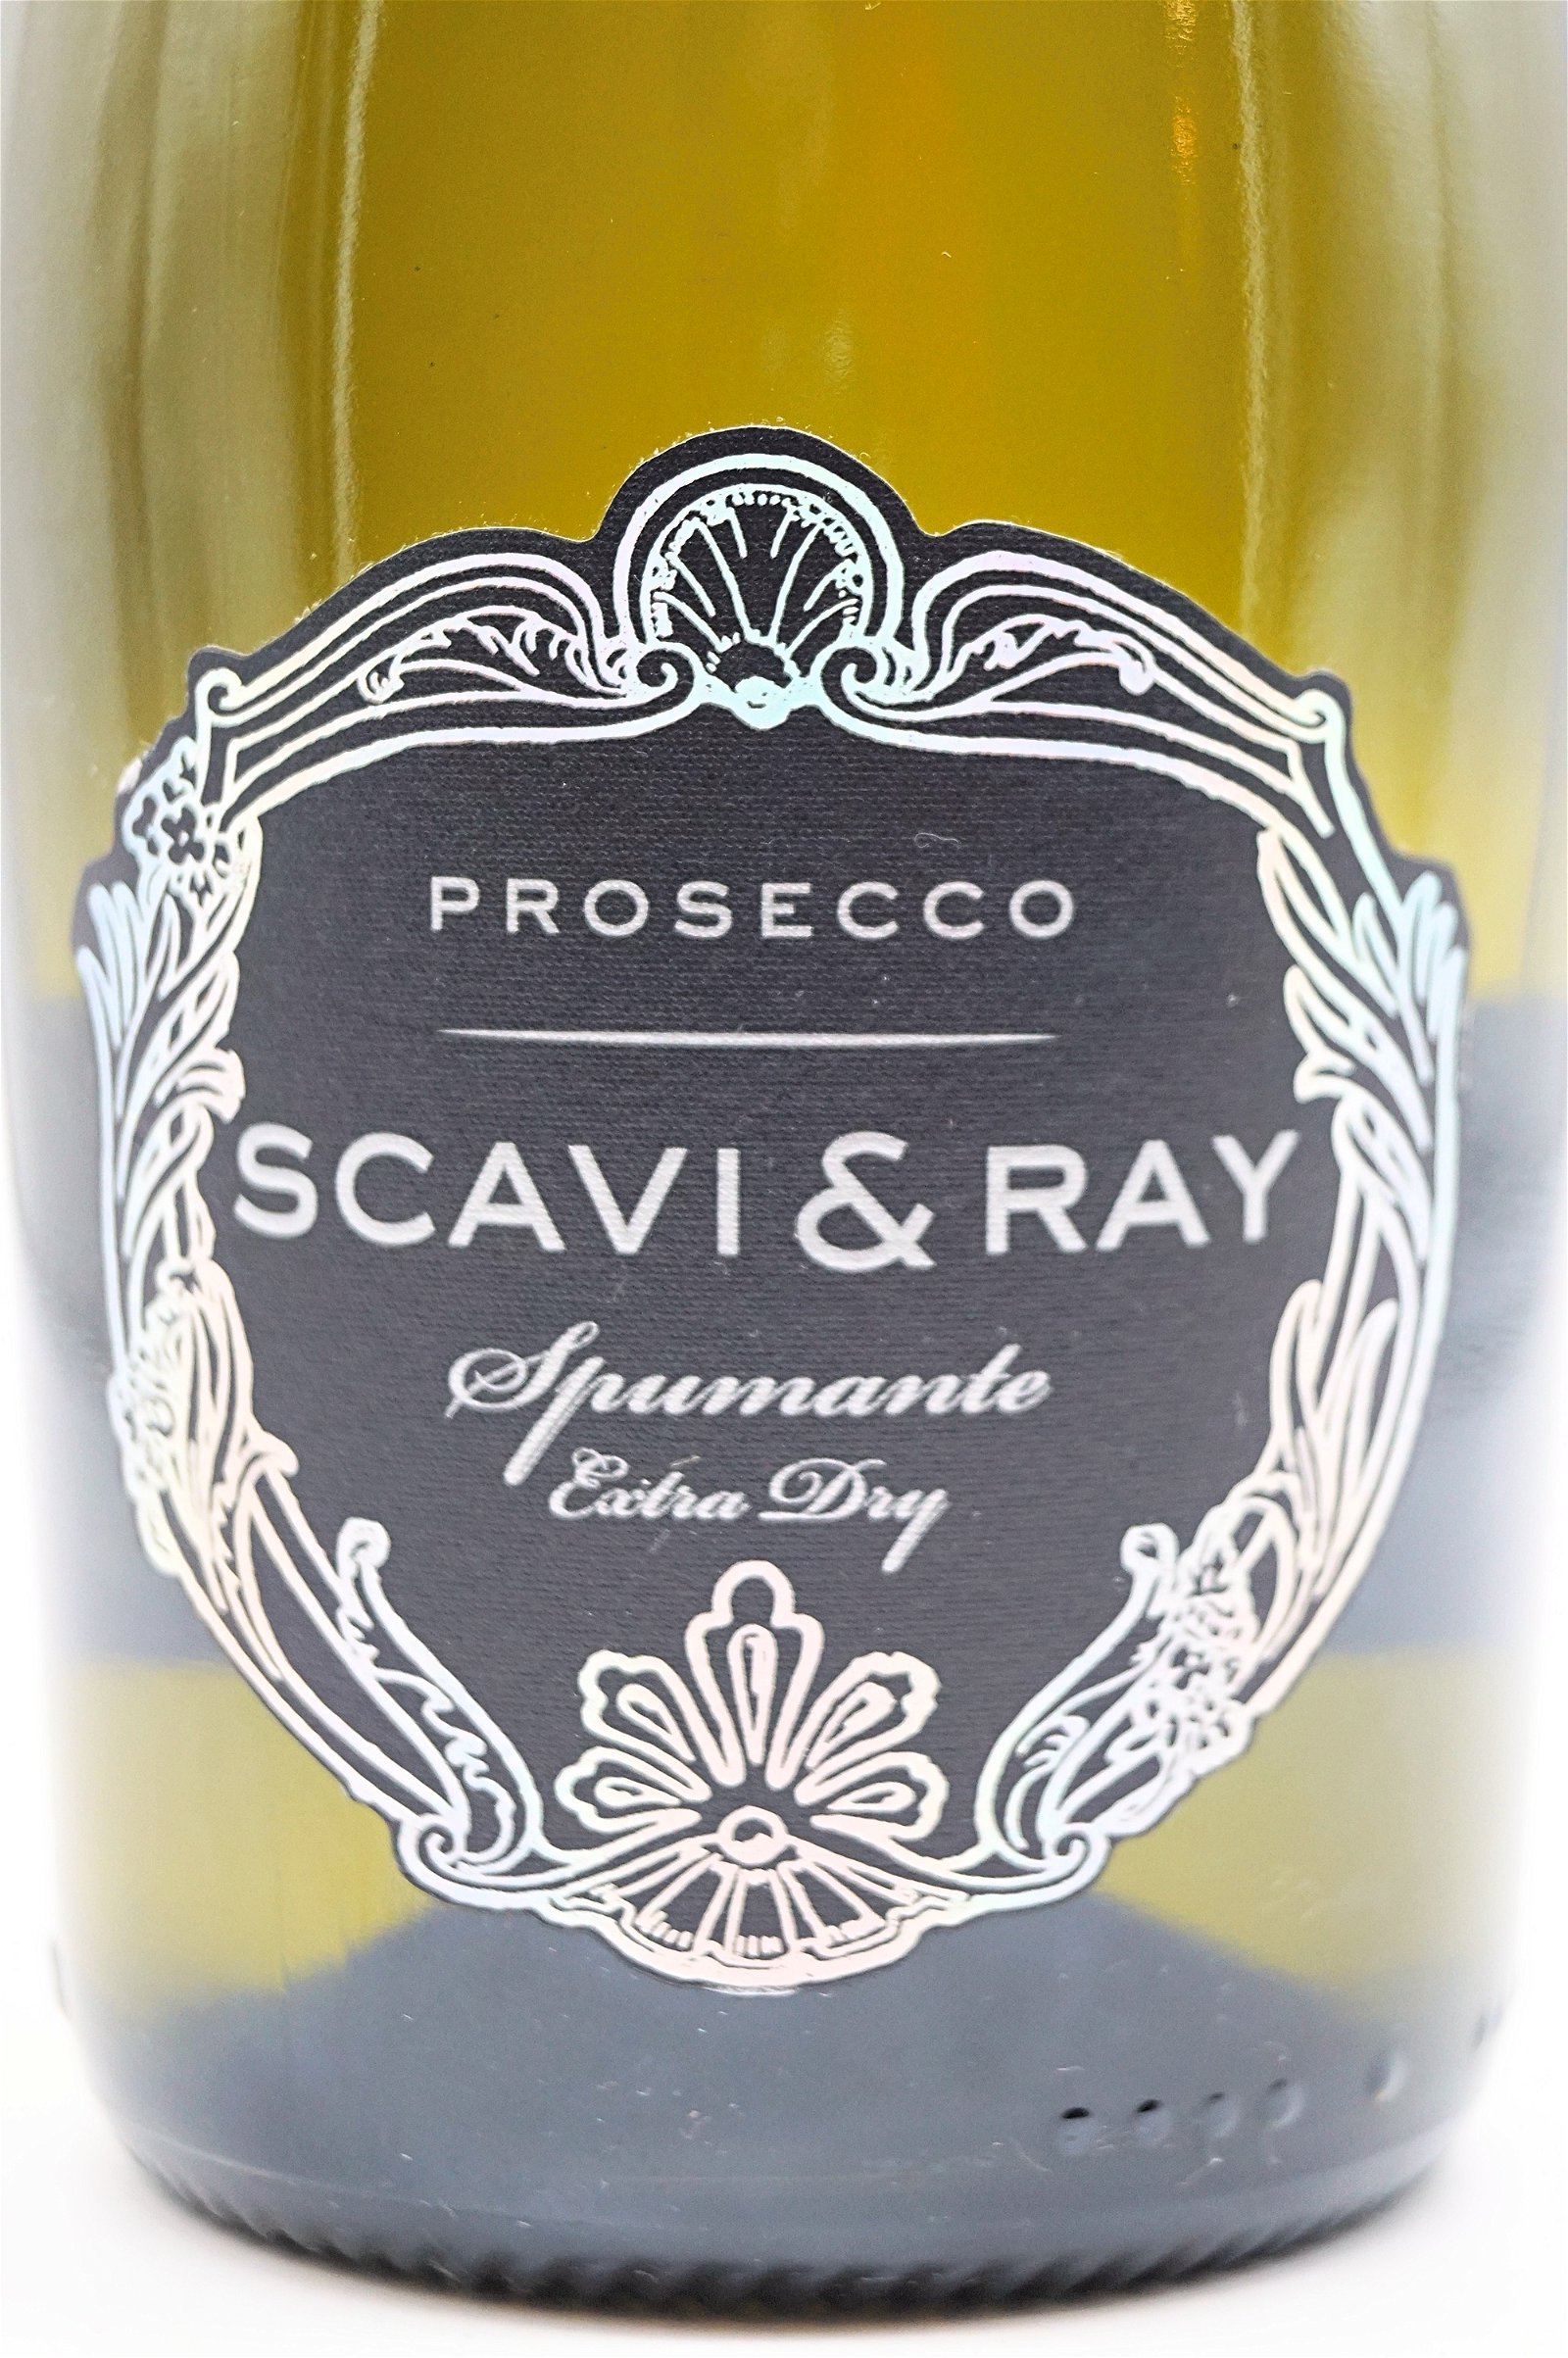 Scavi & Ray Prosecco Spumante